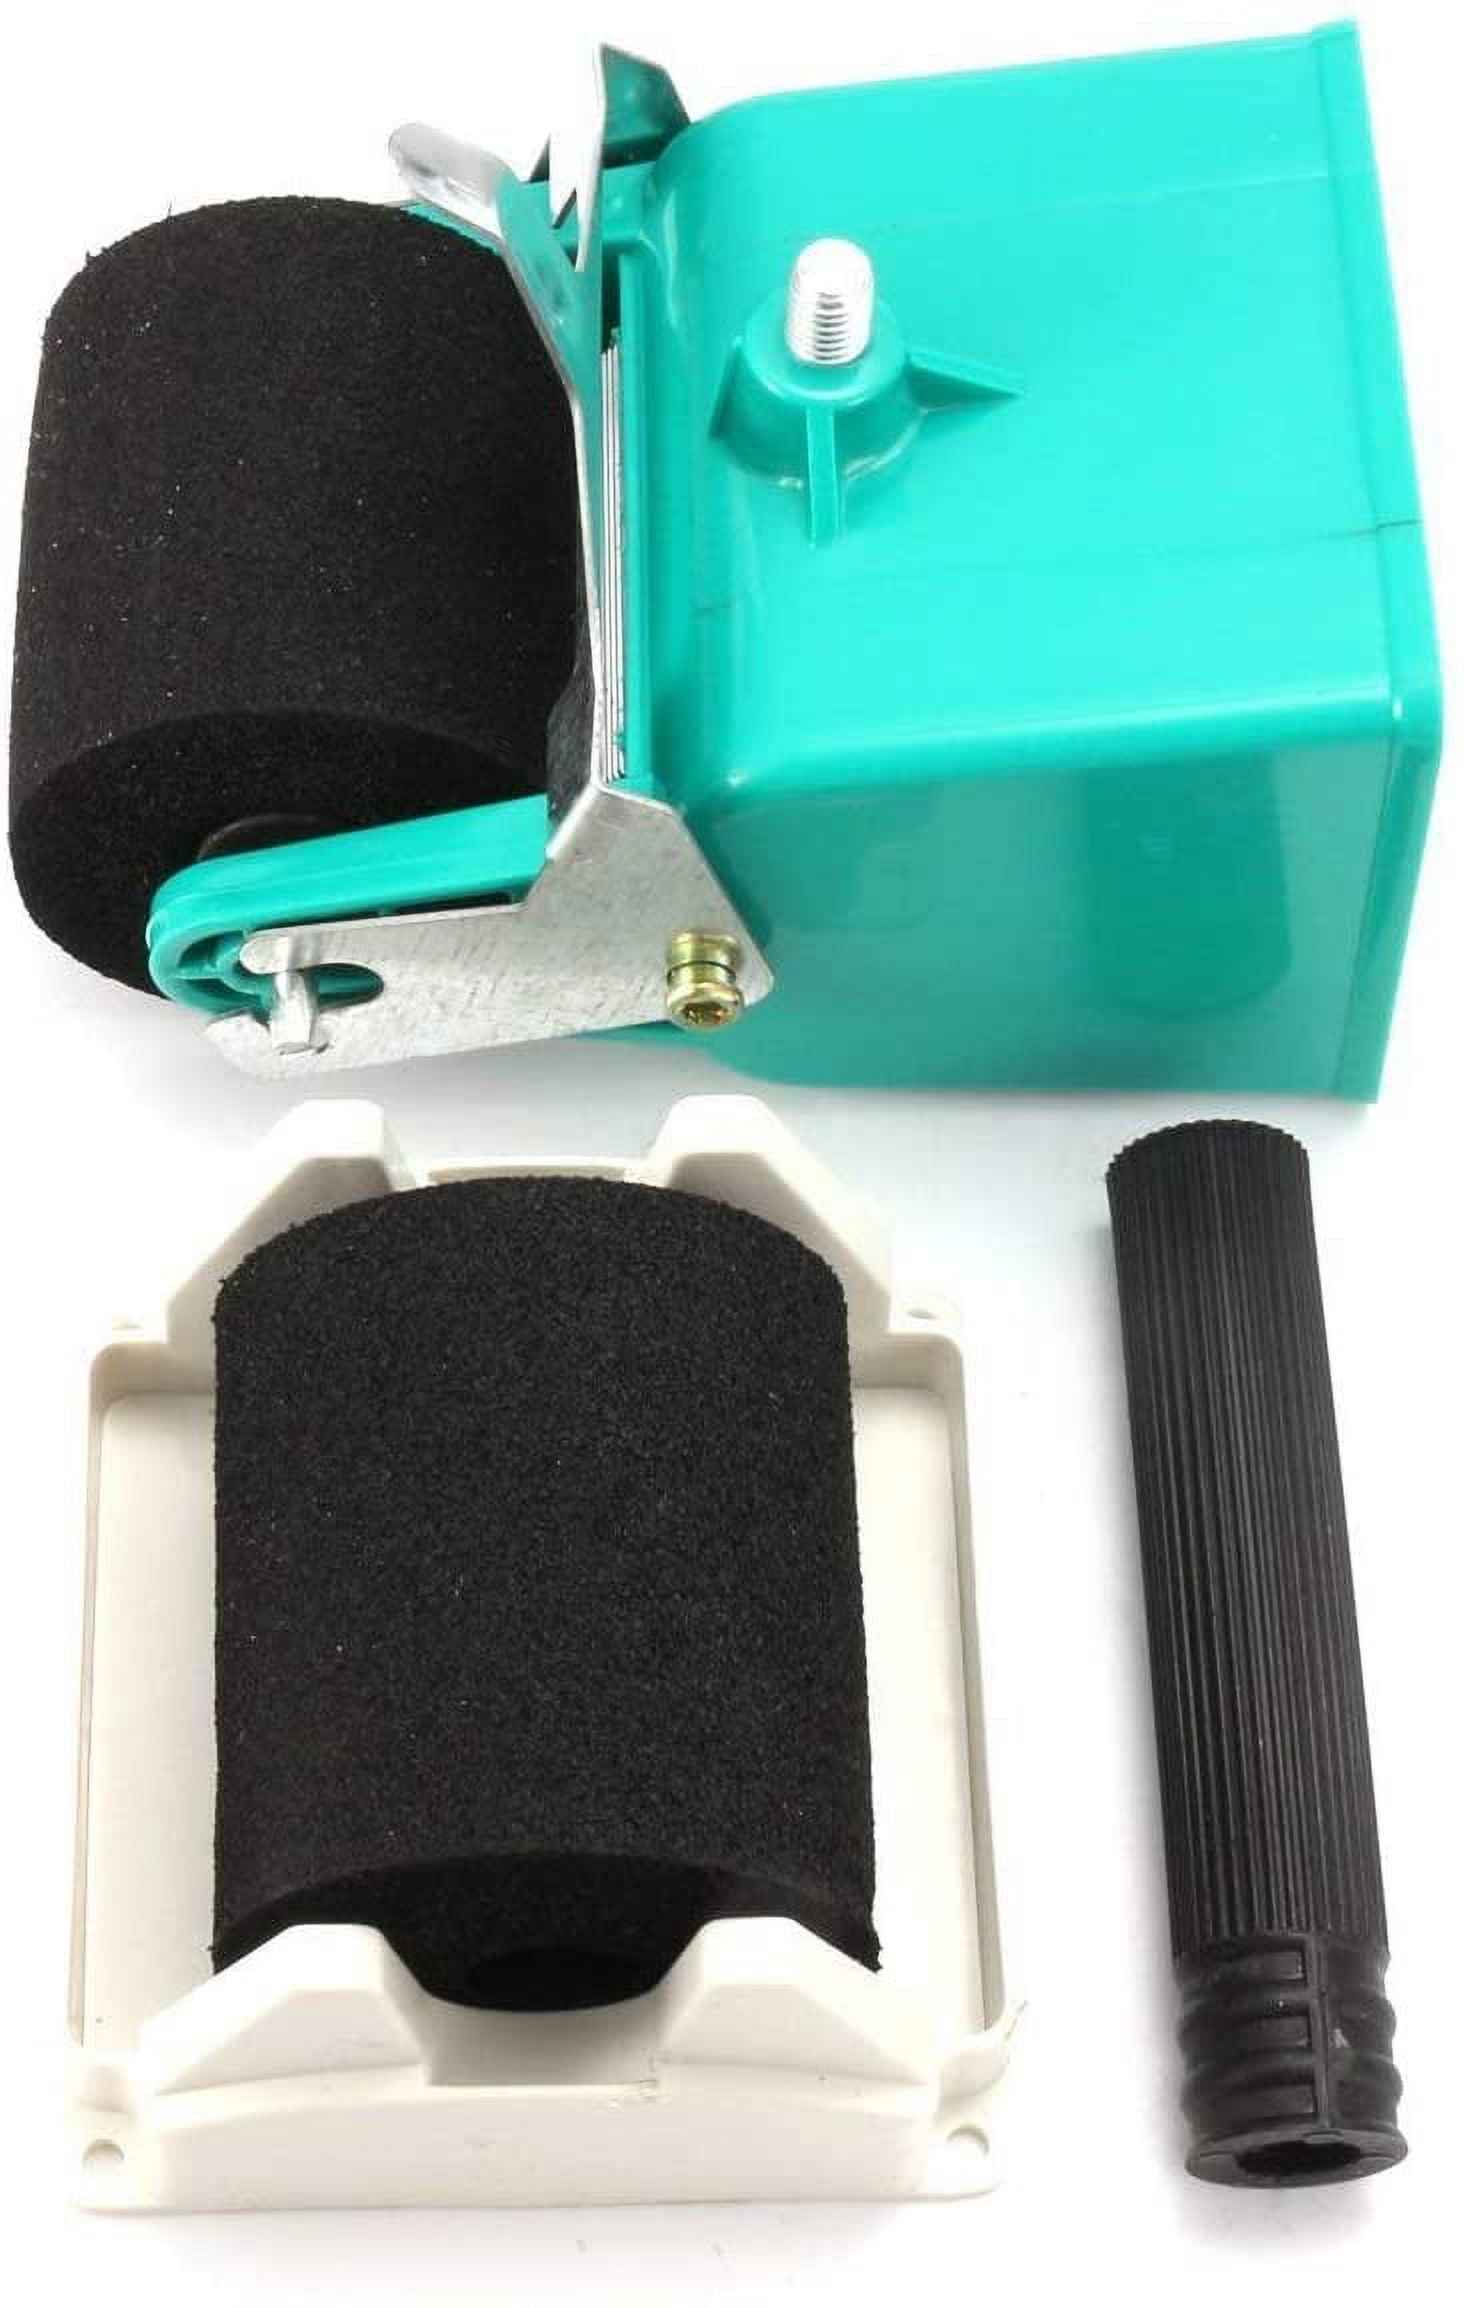 Portable Glue Applicator, 320mL F60C Portable Glue Applicator, Portable  Woodworking Glue Roller with Stand and Flow Control Switch Glue, Wood Glue